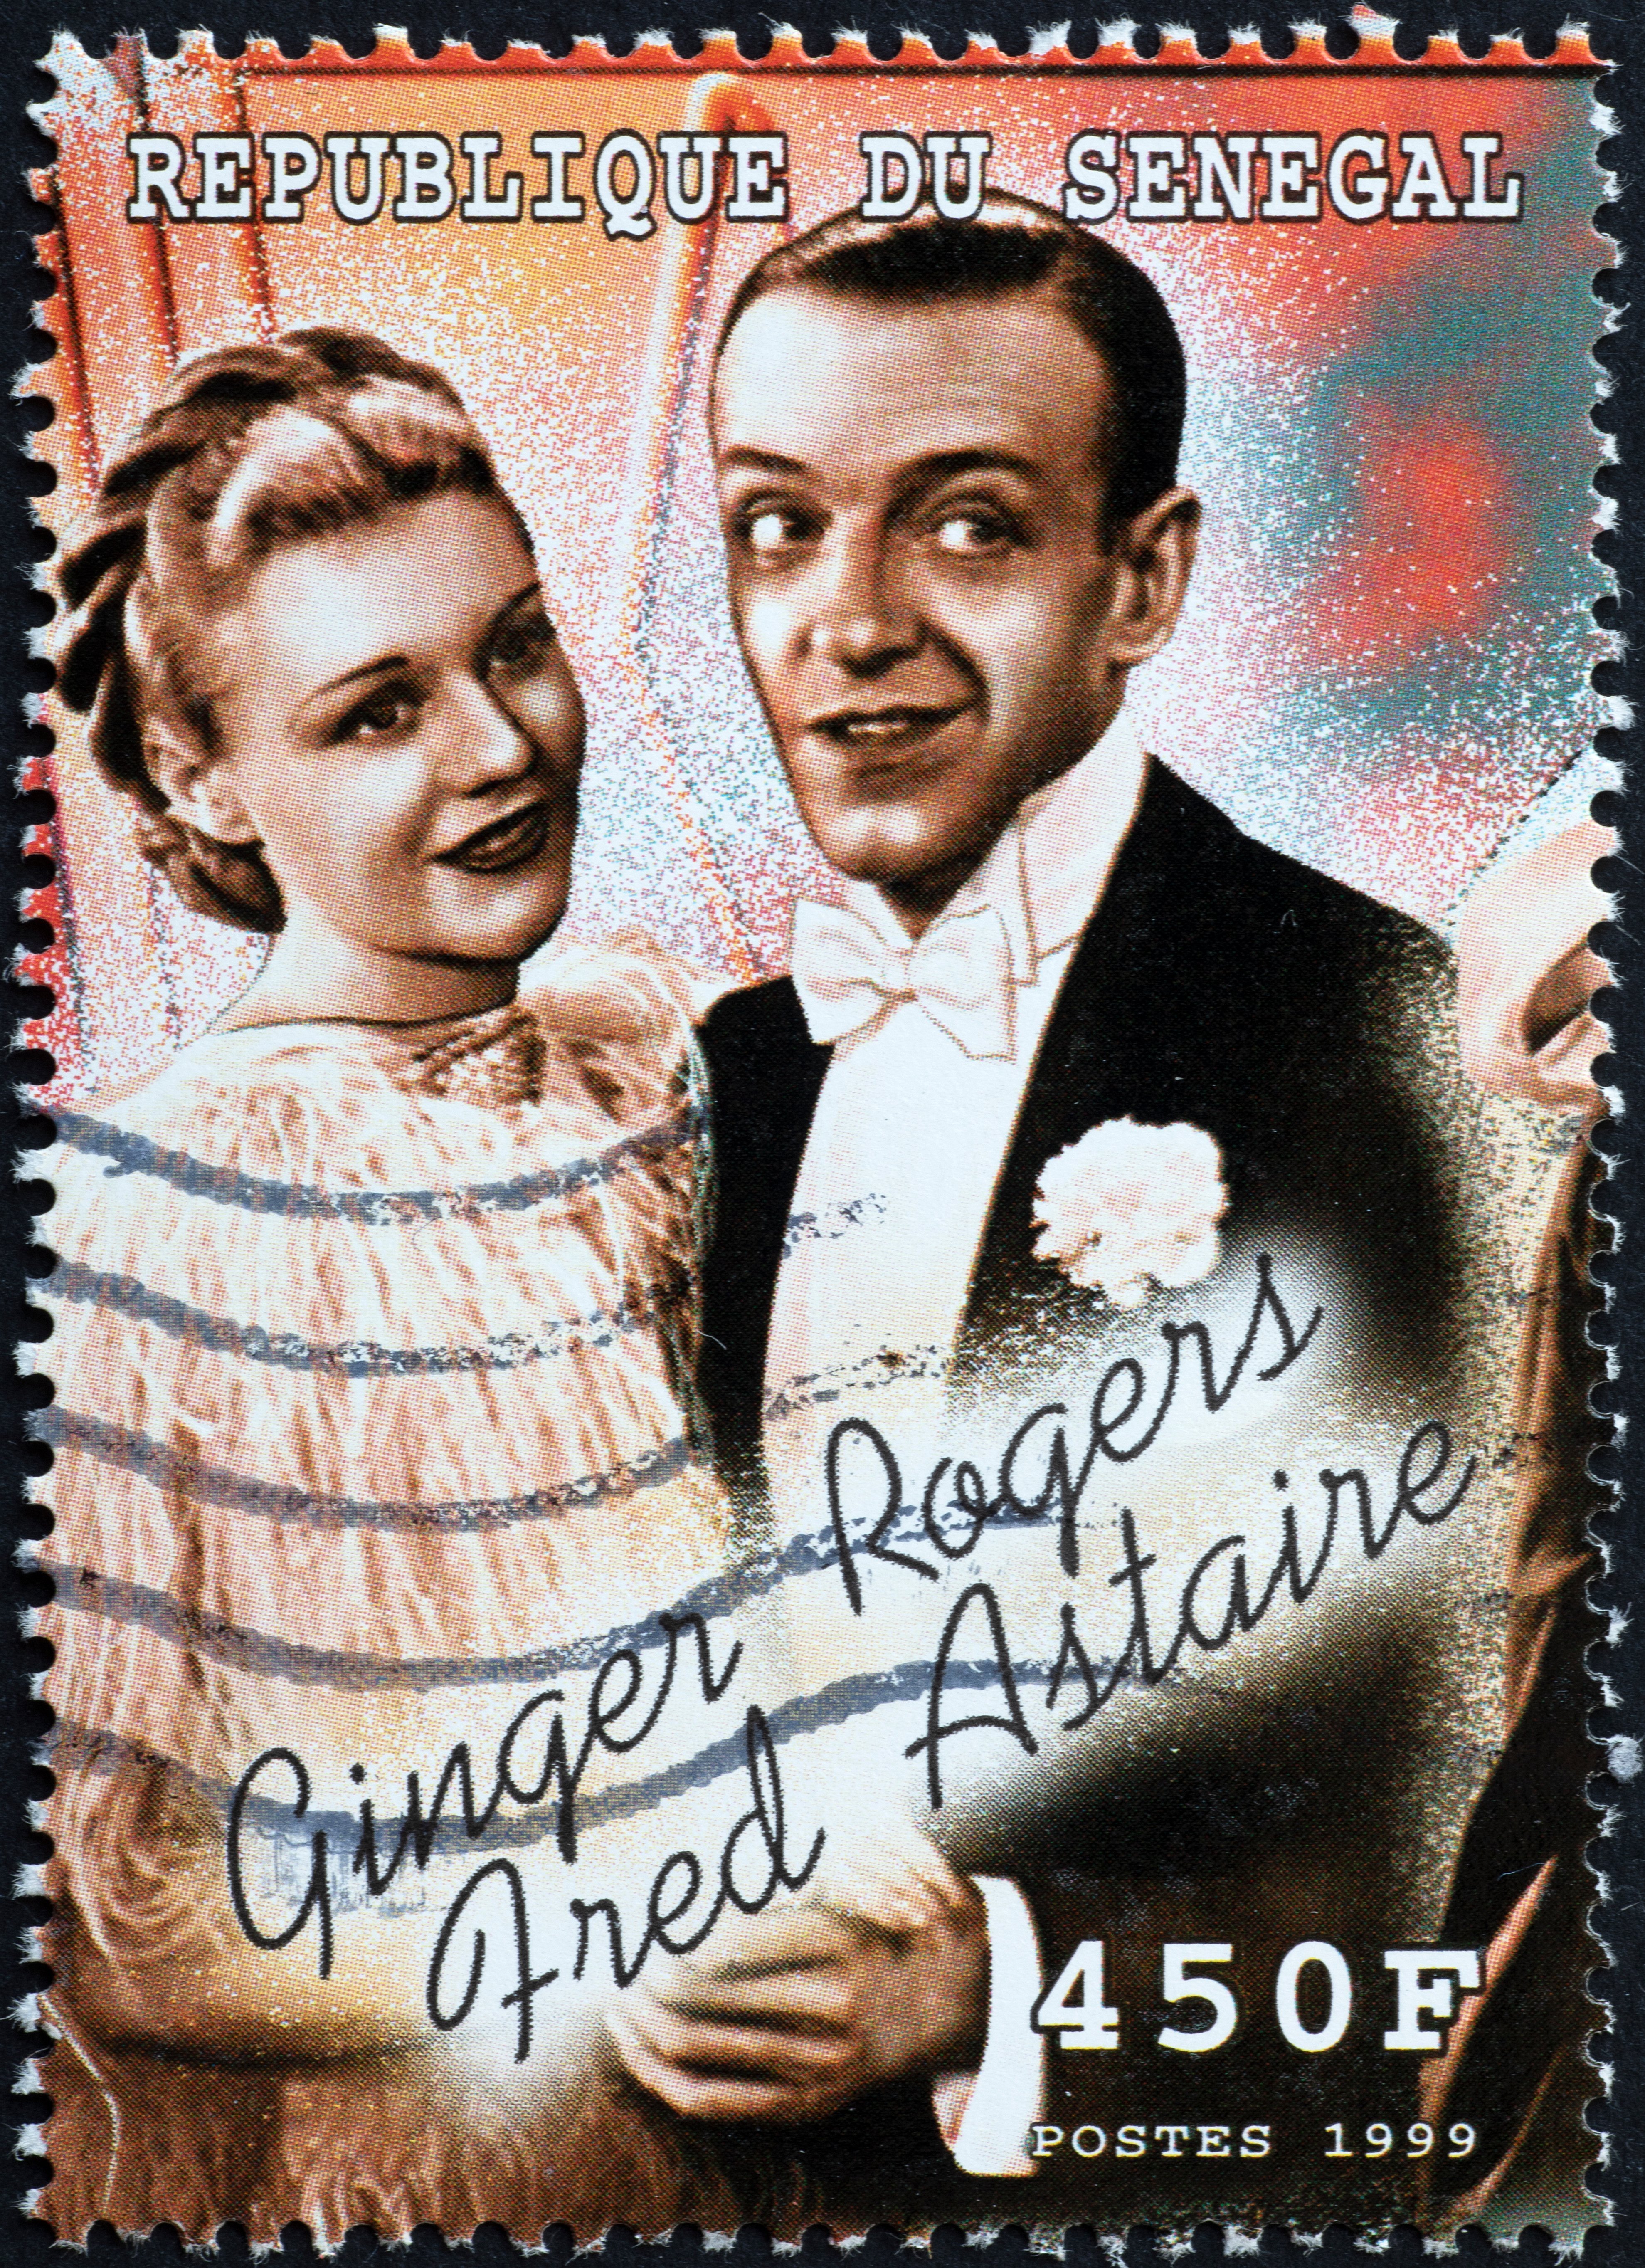 Fred Astaire und Ginger Rogers auf einer Briefmarke | Quelle: Shutterstock